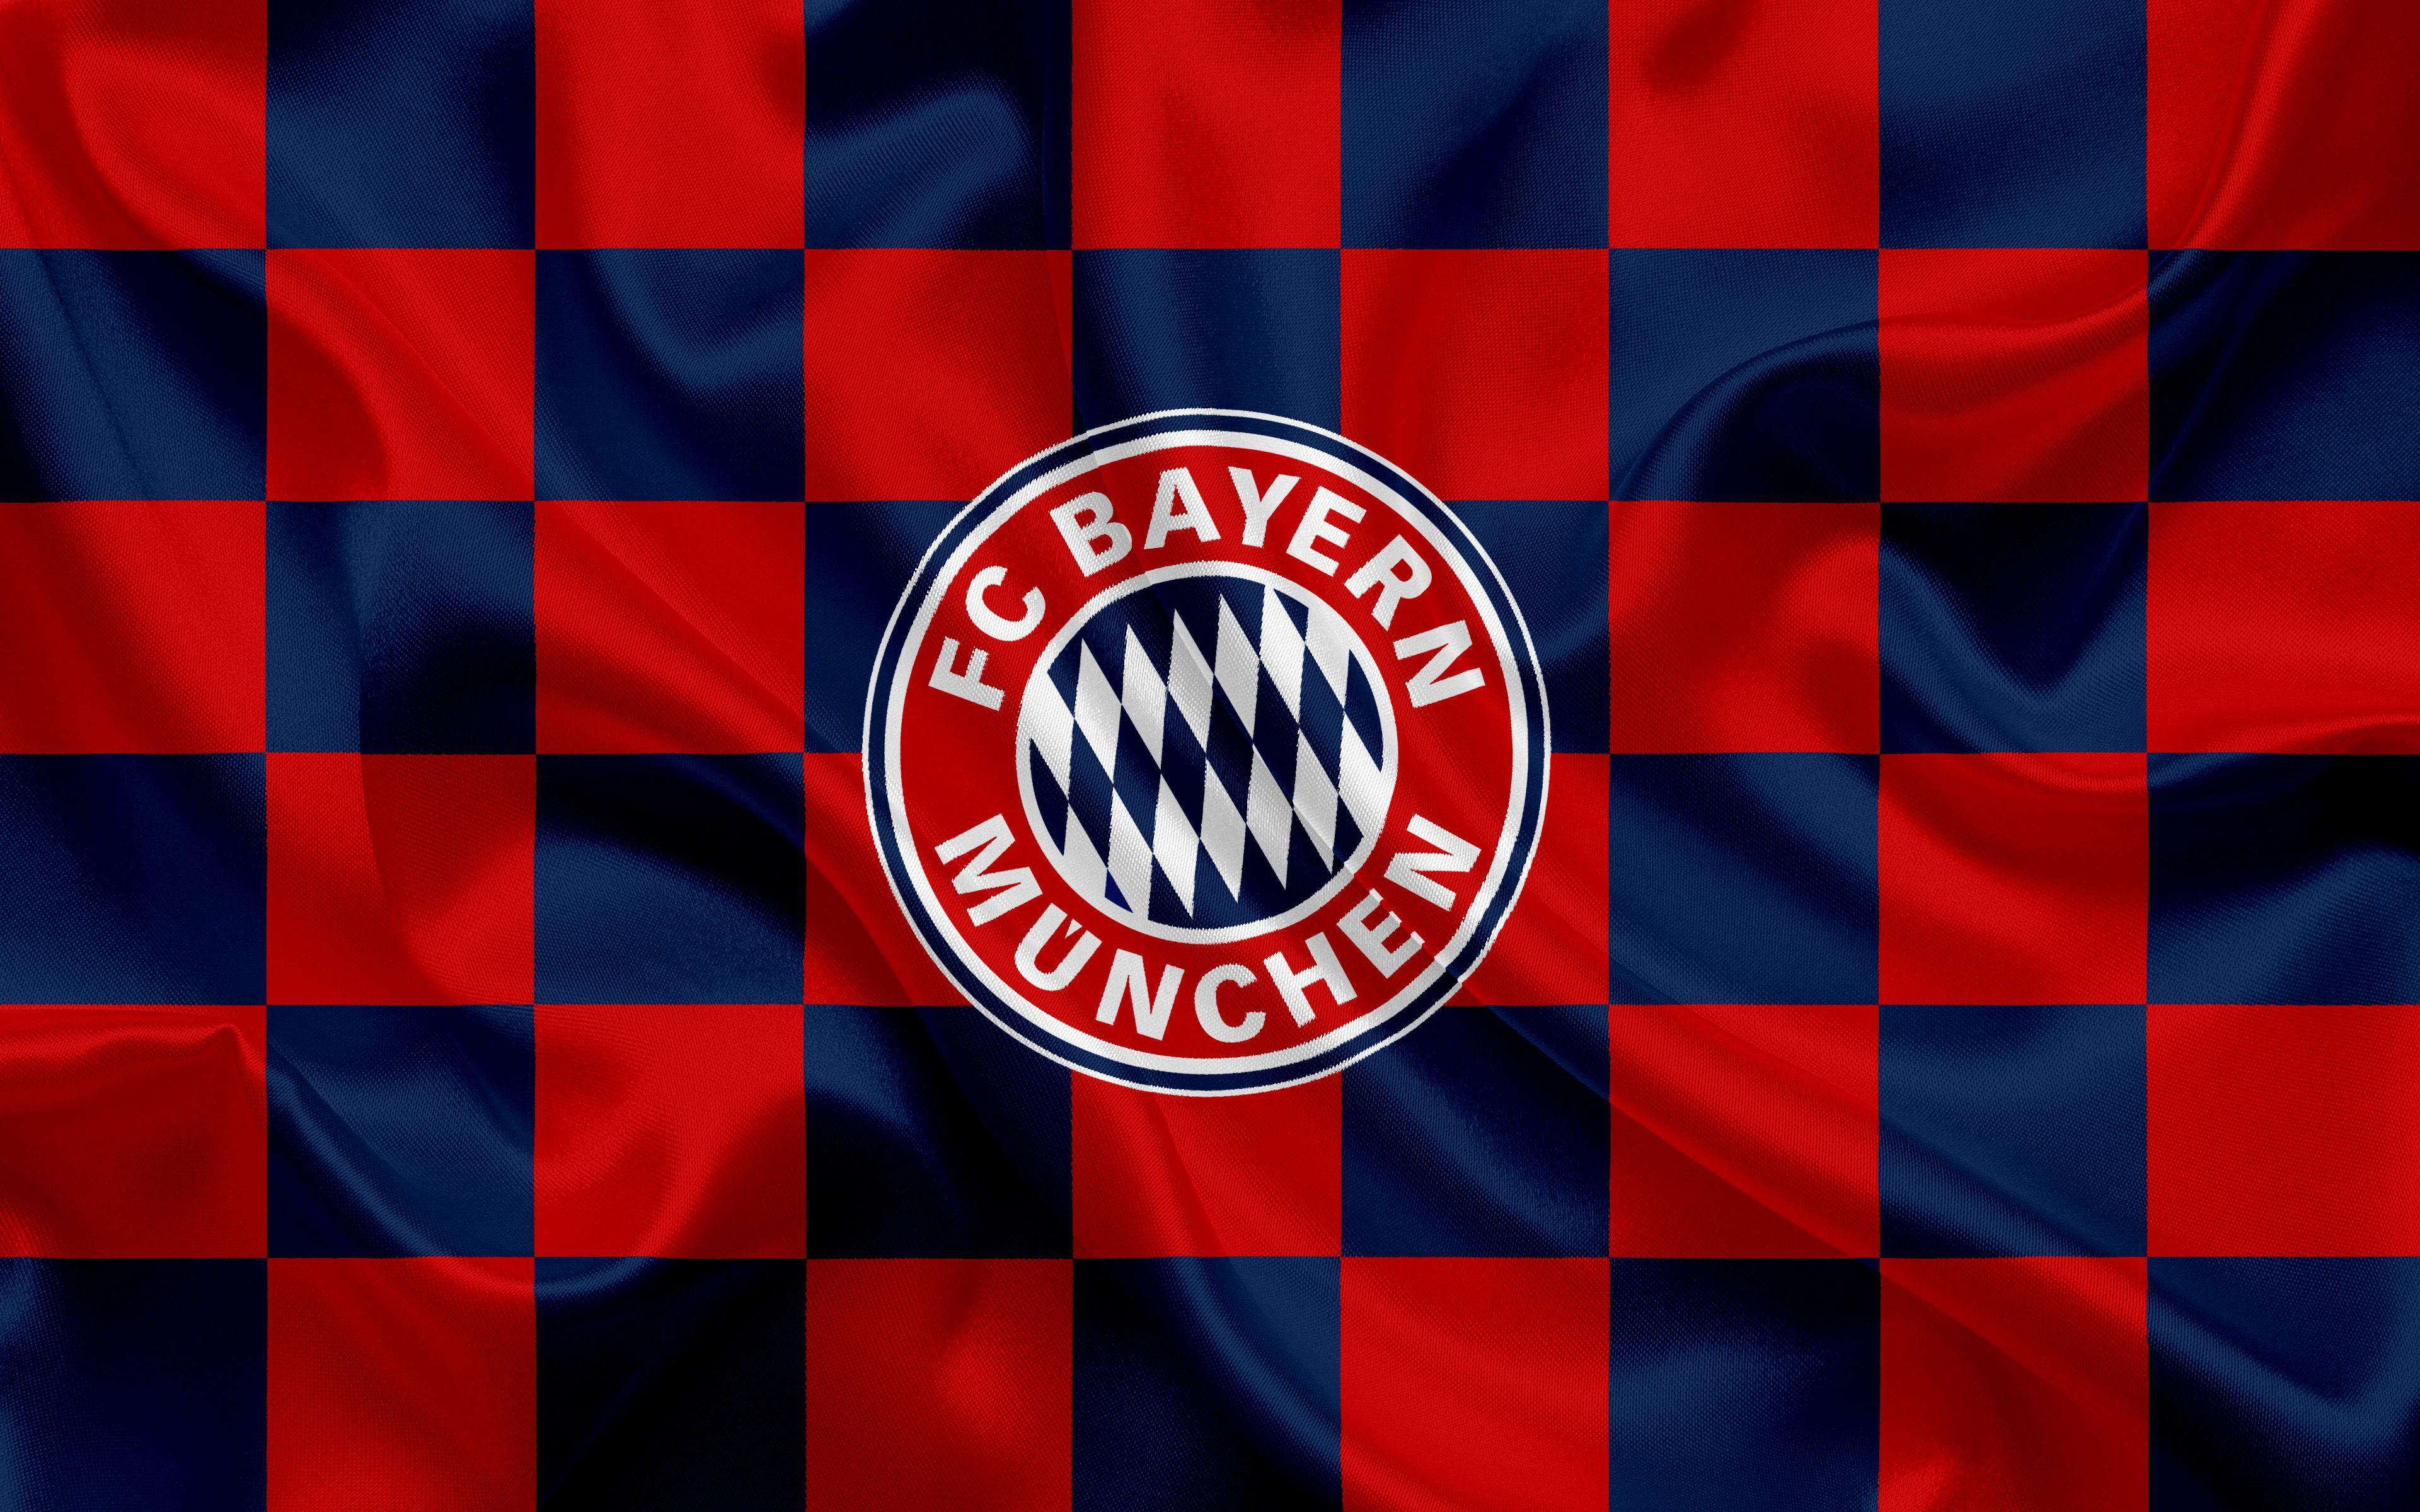 Bayern Munich Wallpapers Top Free Bayern Munich Backgrounds Wallpaperaccess